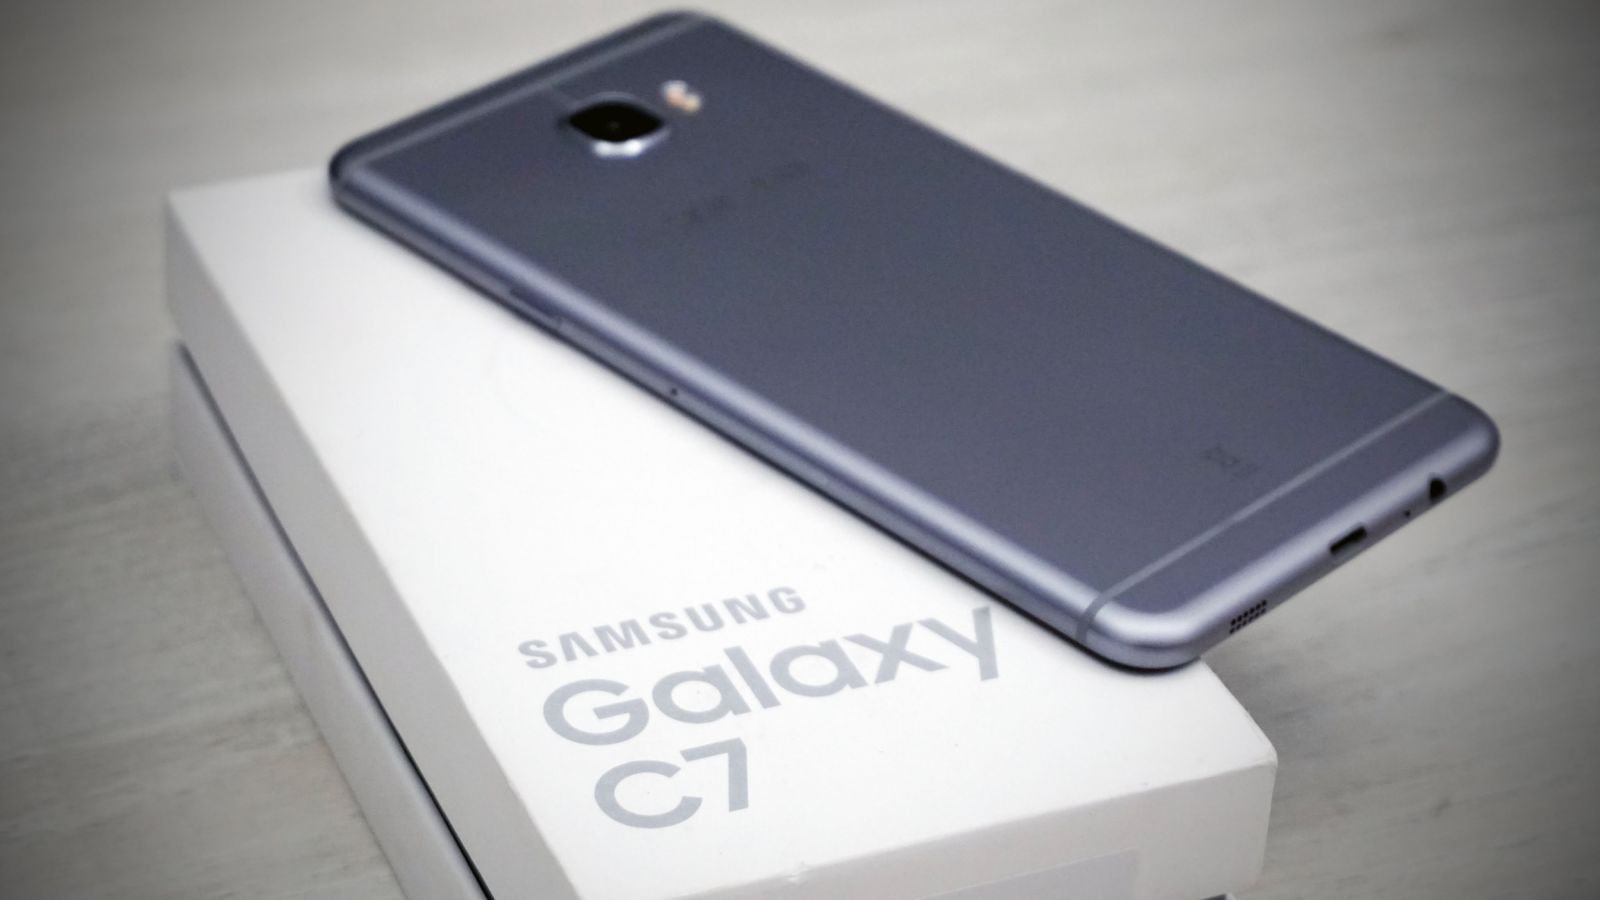 Samsung Galaxy C7 là hàng nguyên bản 100% - Nguyên Seal